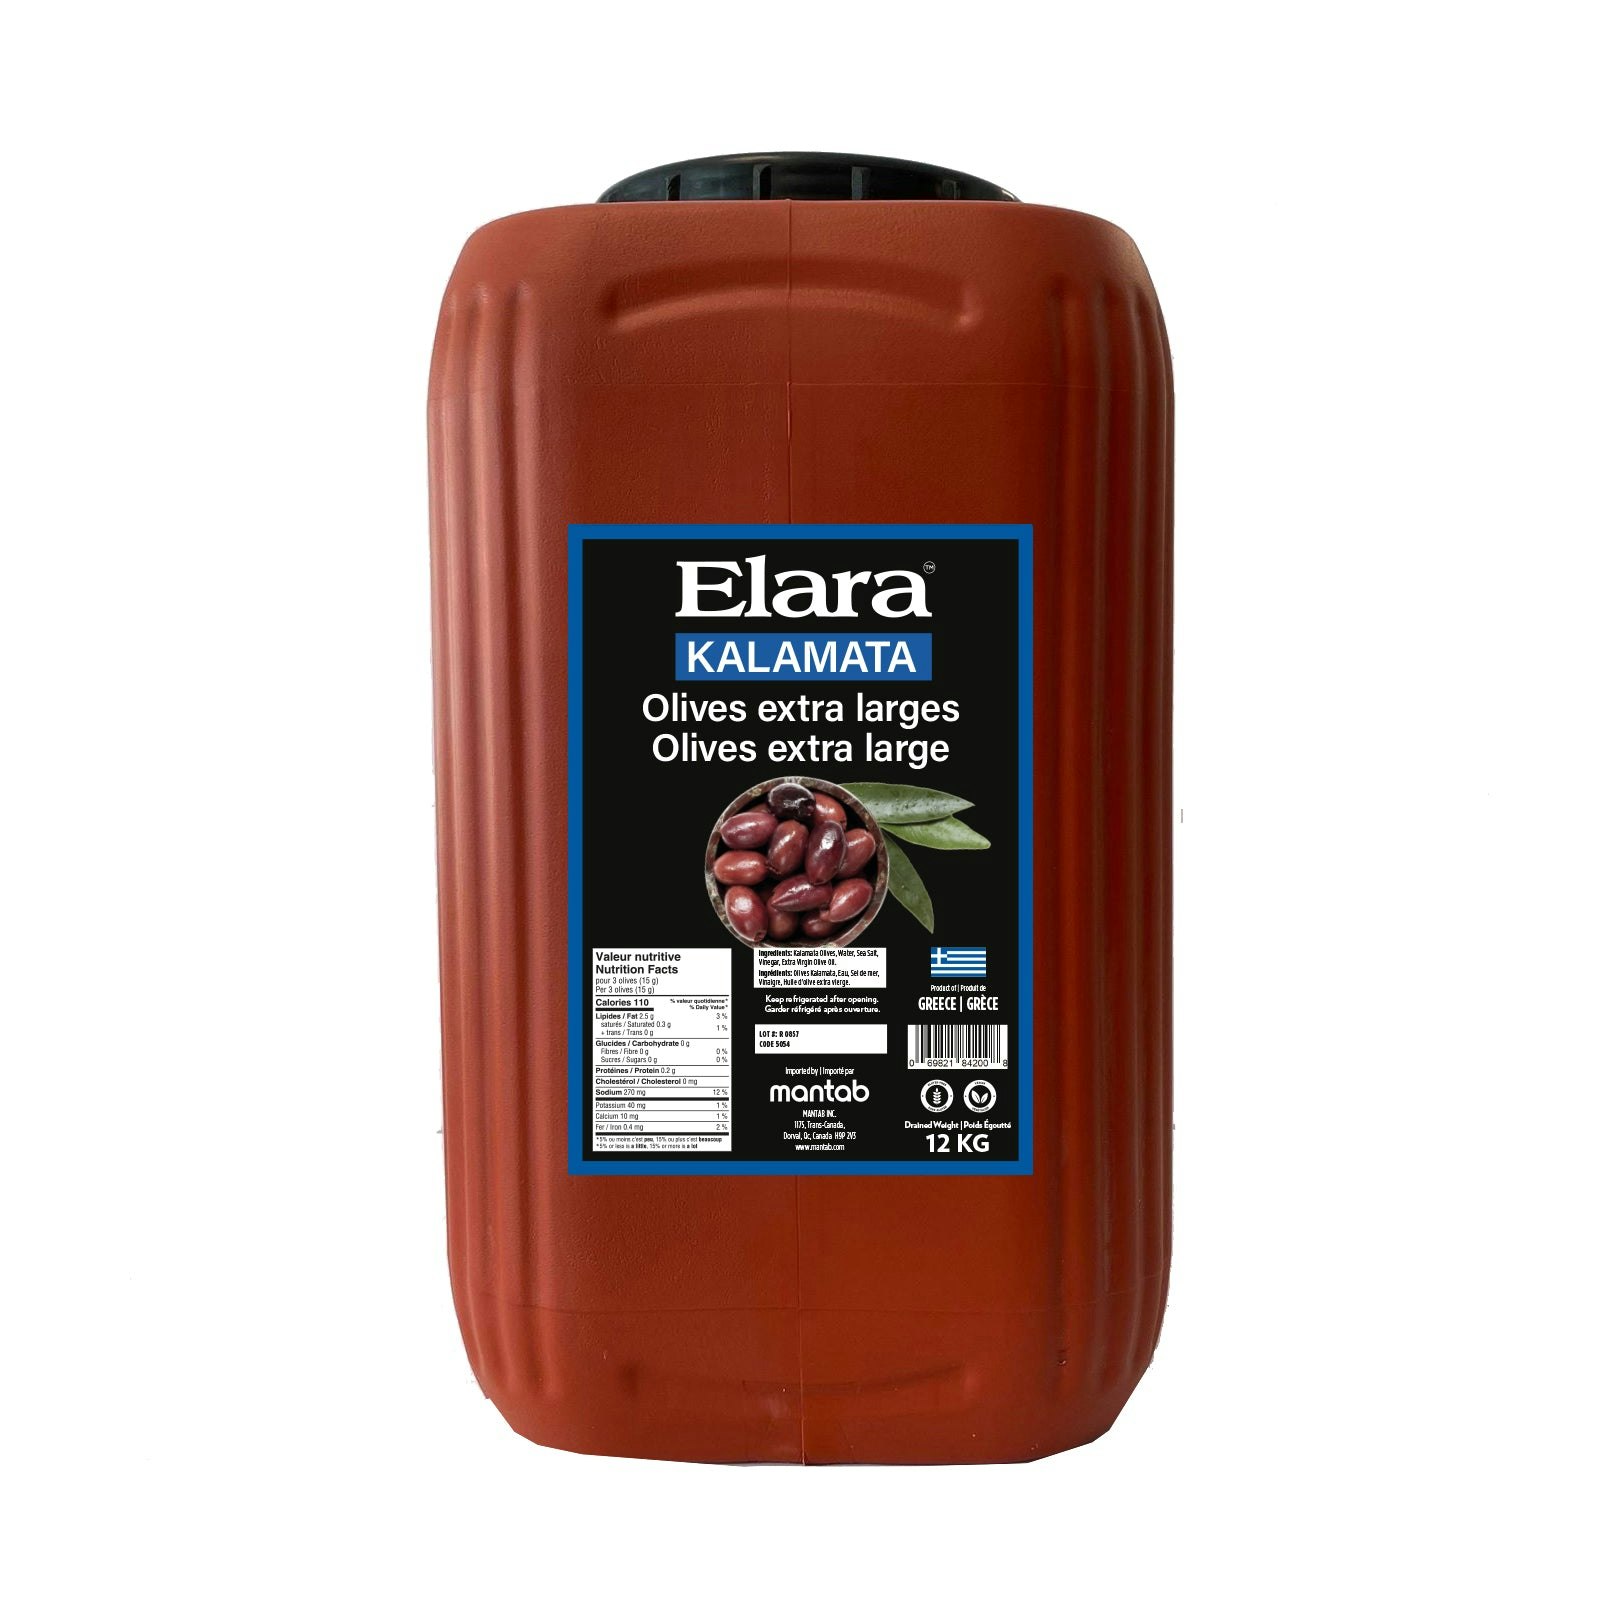 ELARA Kalamata olives Extra Large